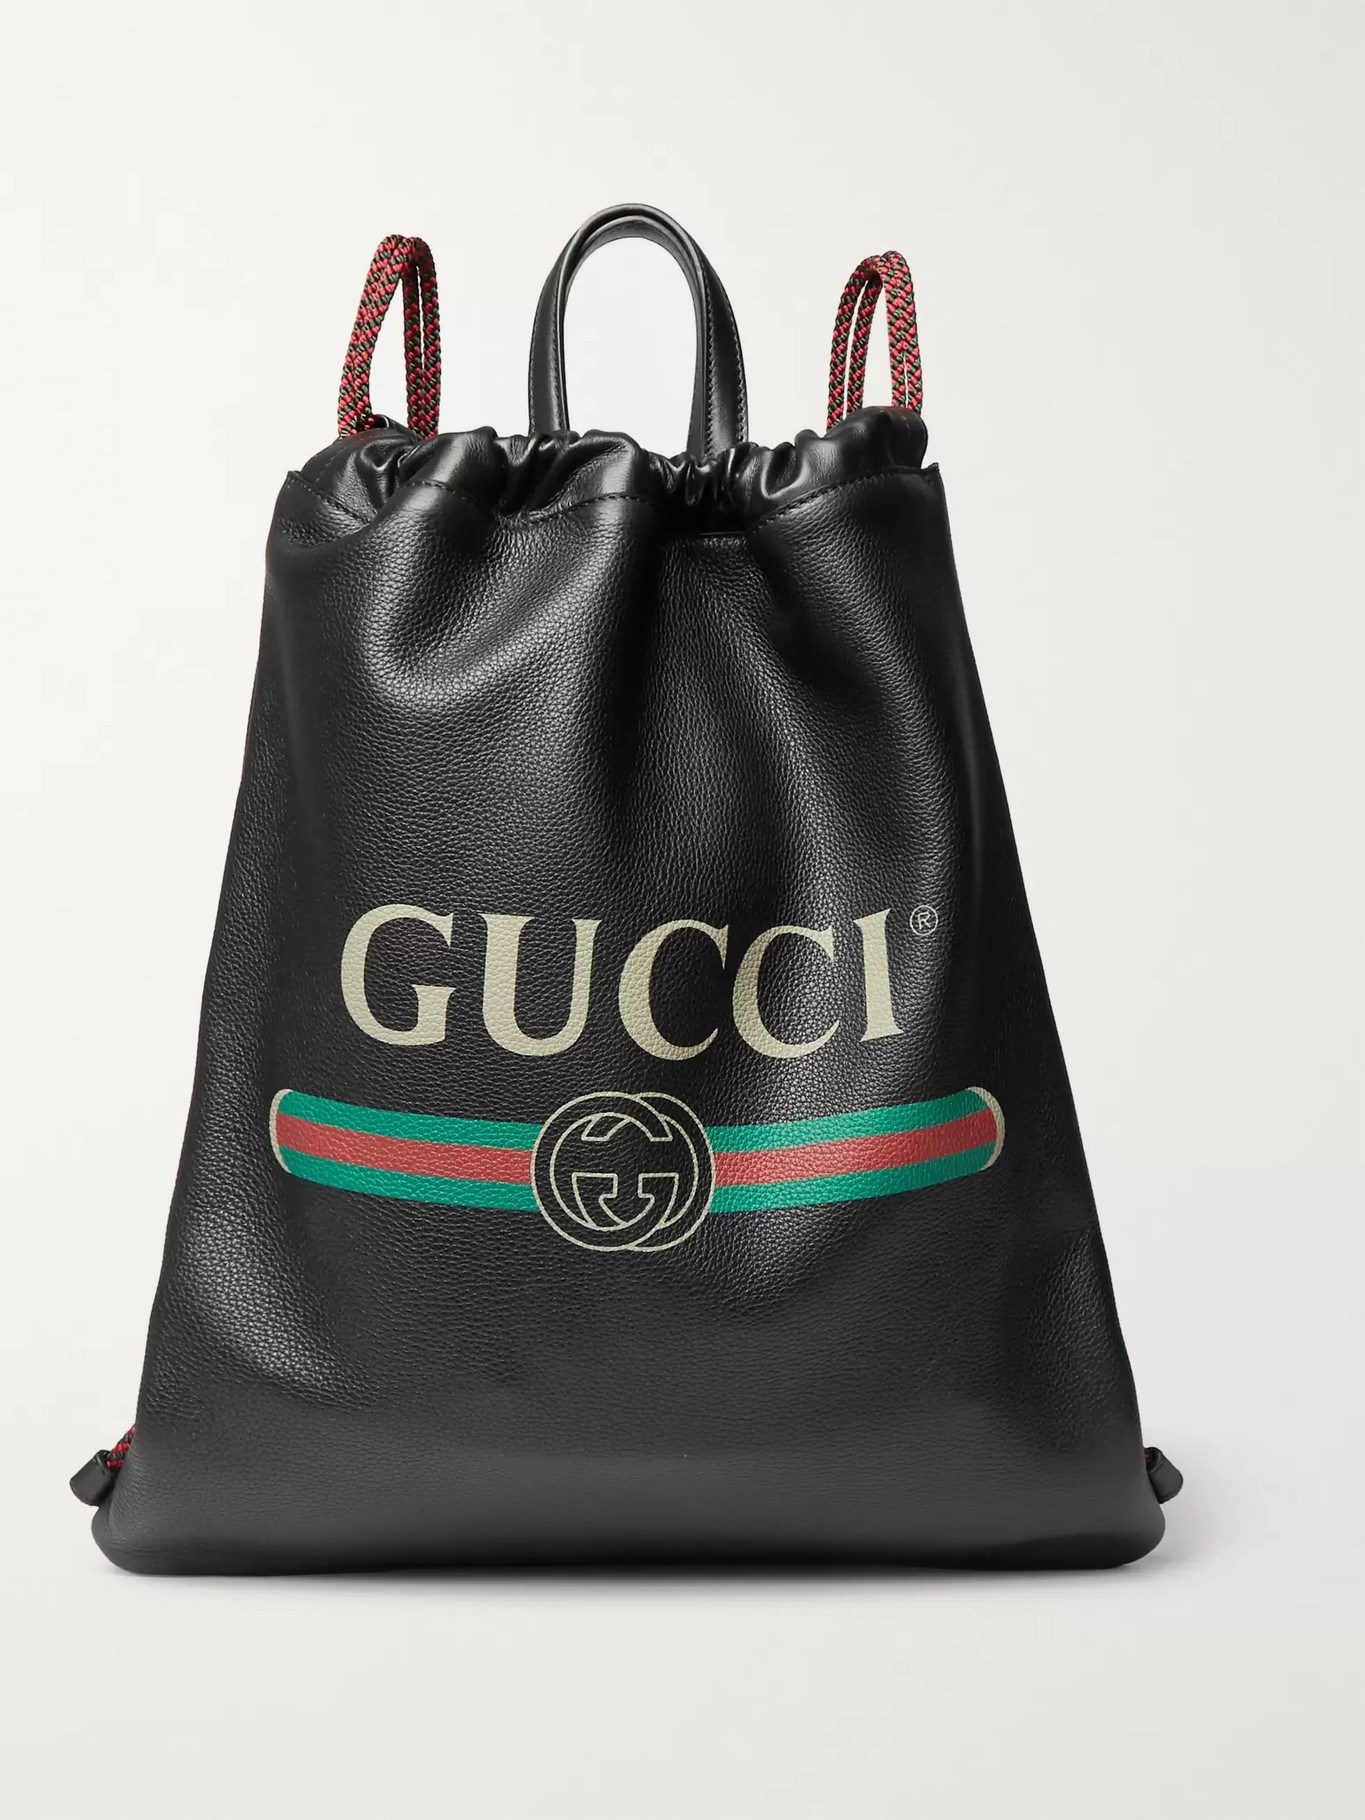 gucci handbags under 500